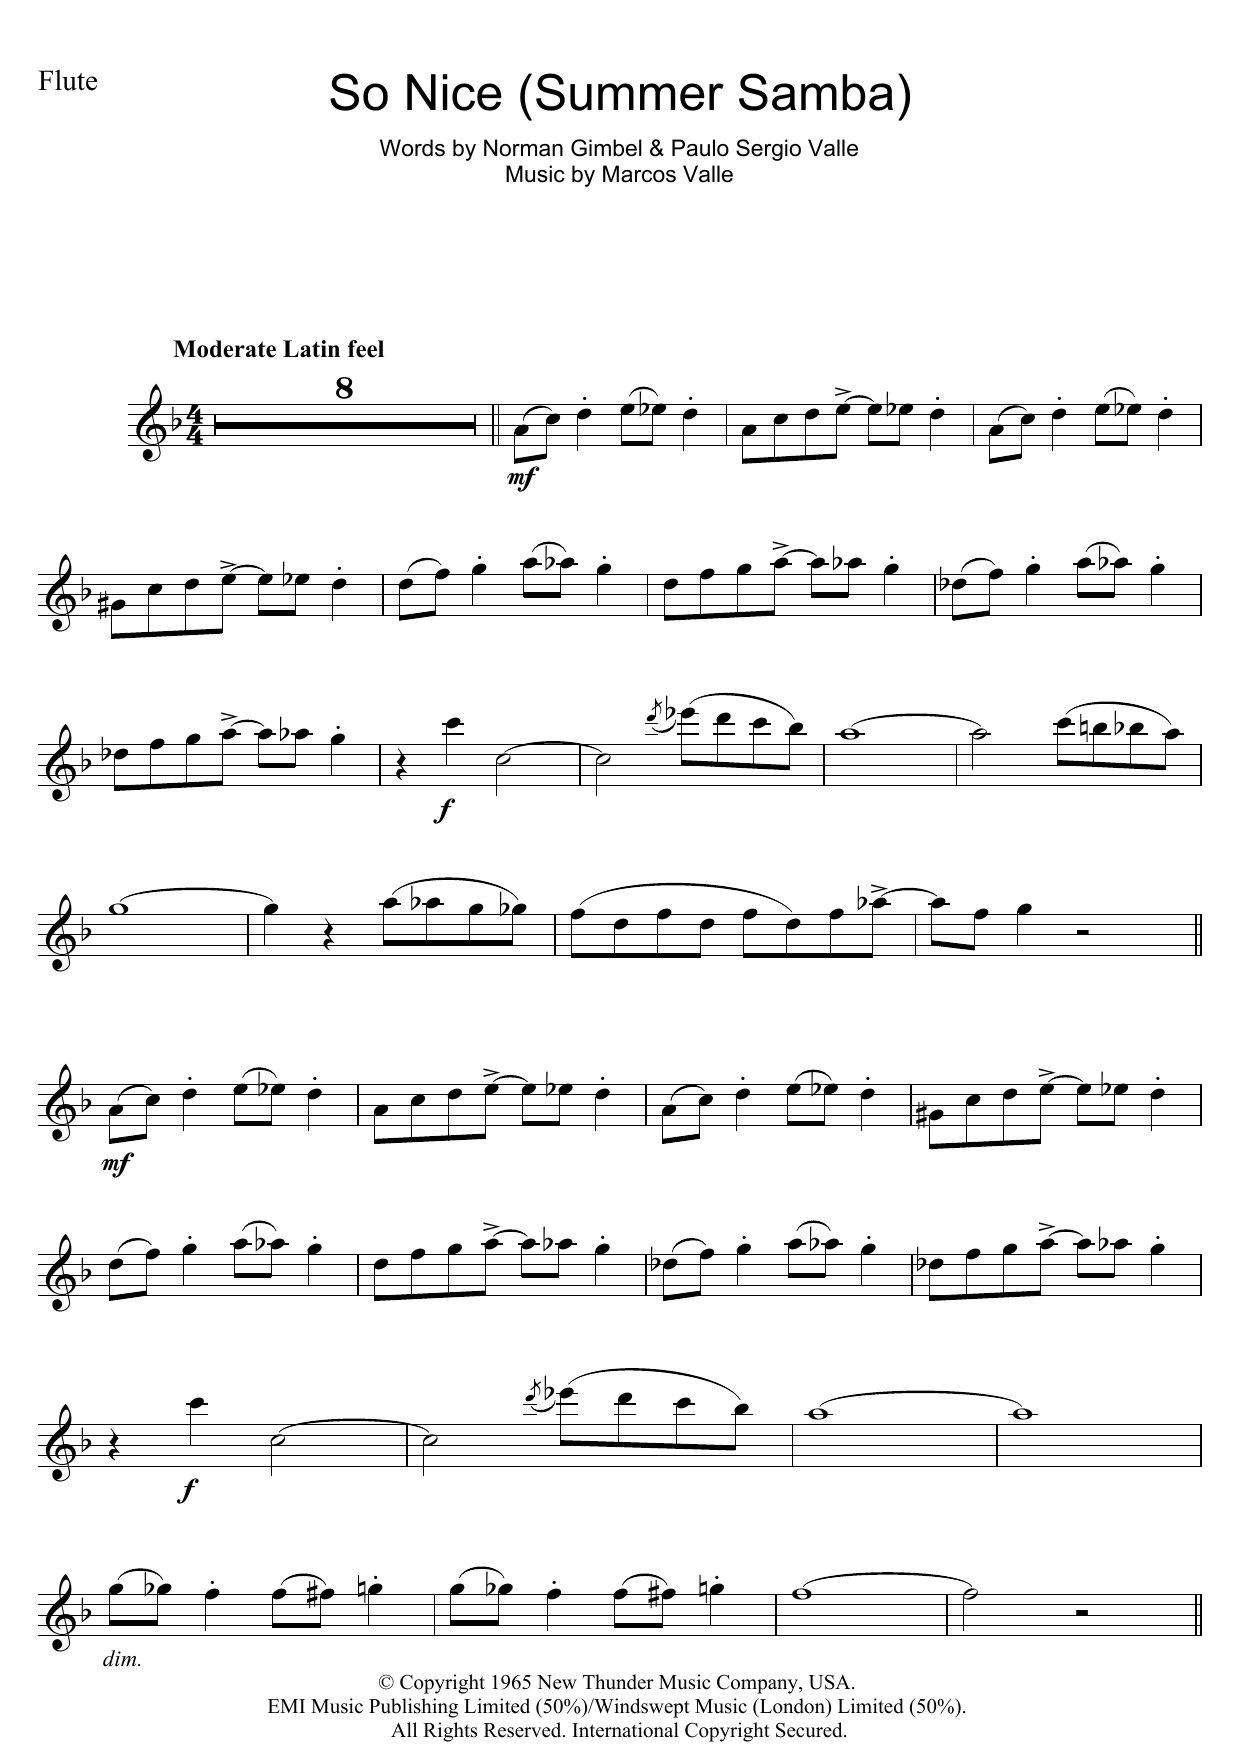 So Nice (Summer Samba) sheet music